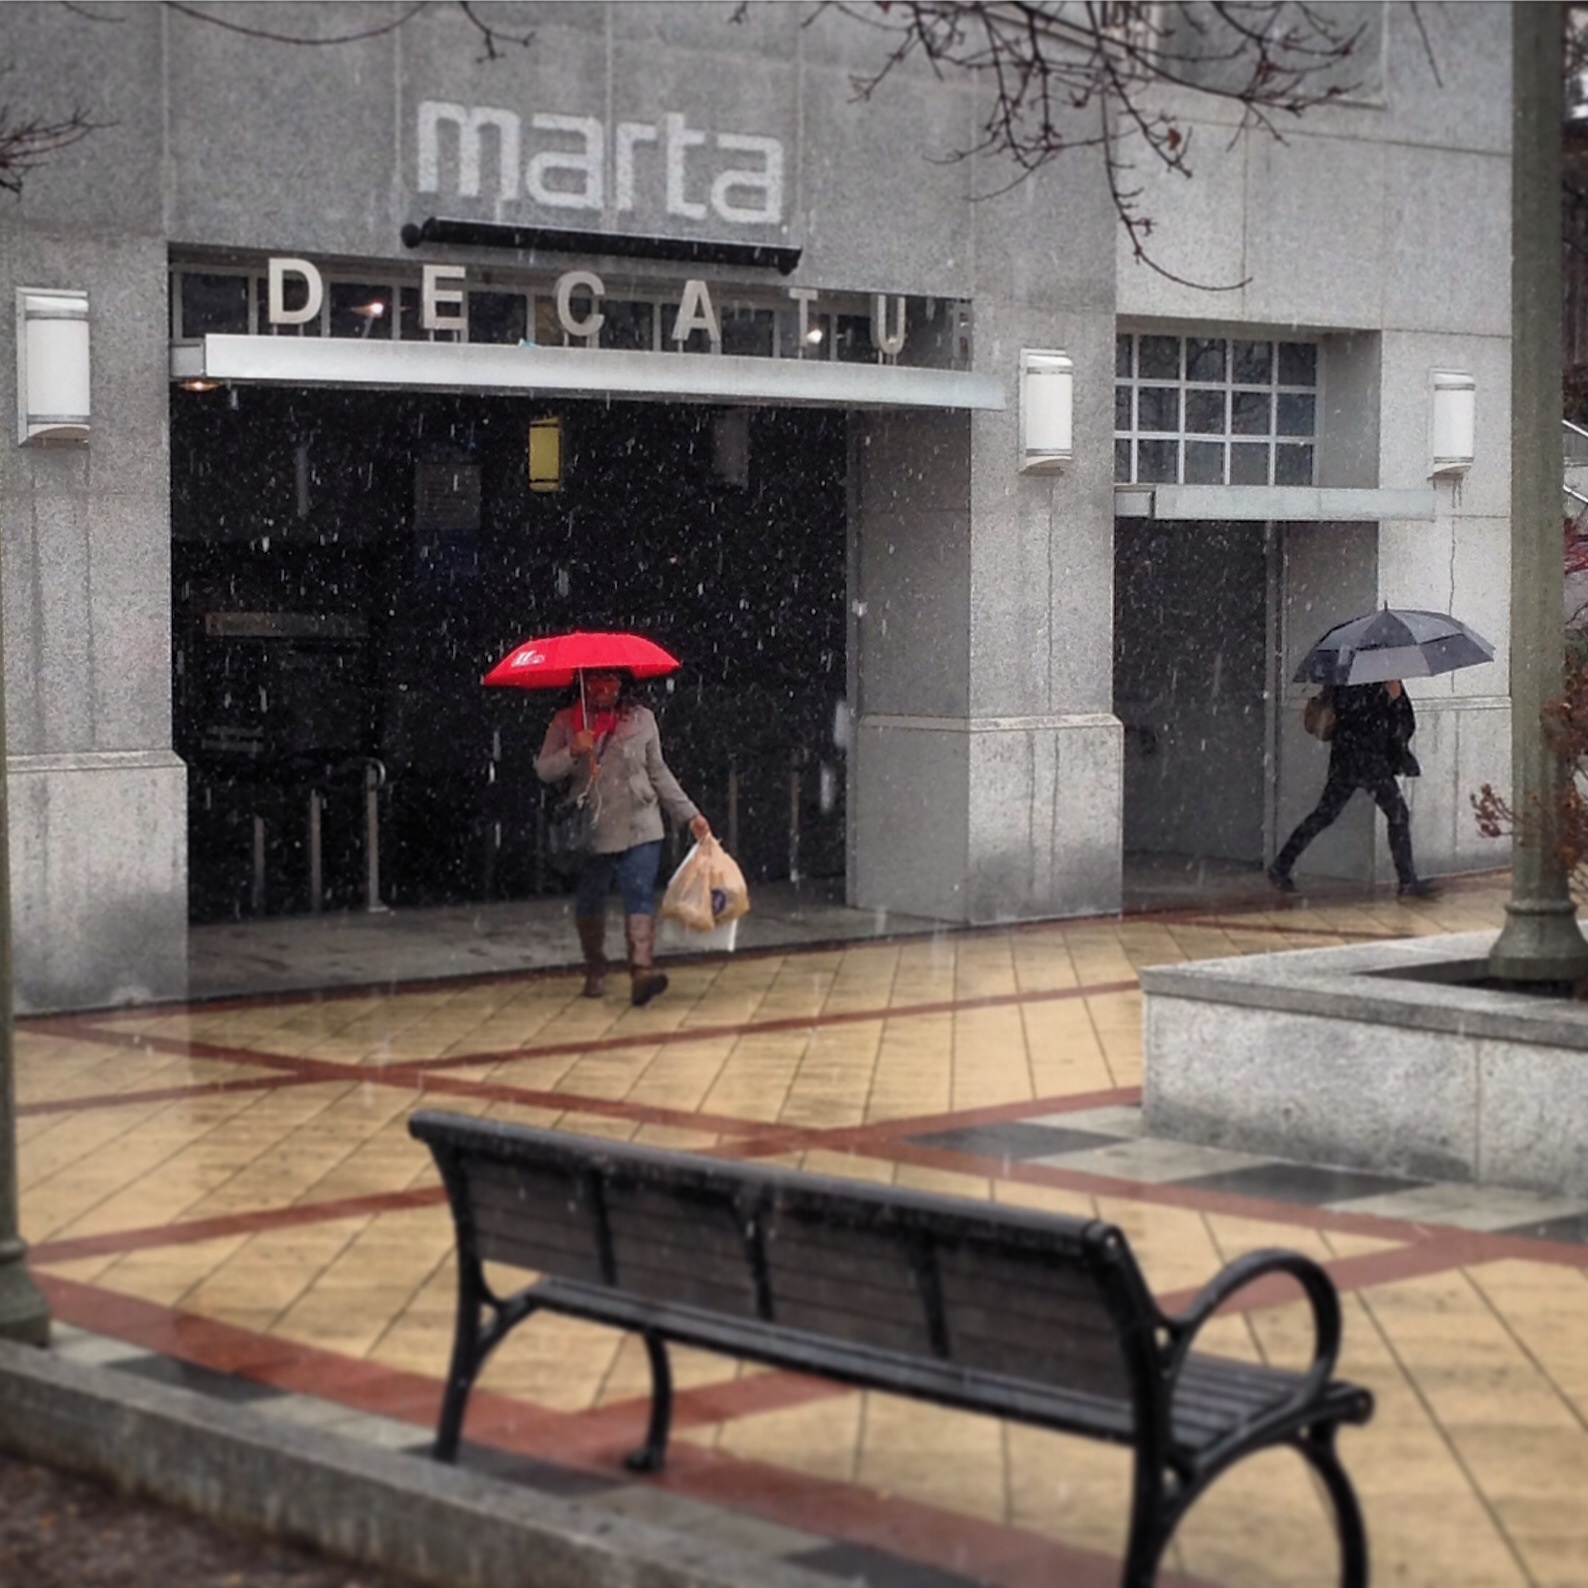 Snow at MARTA